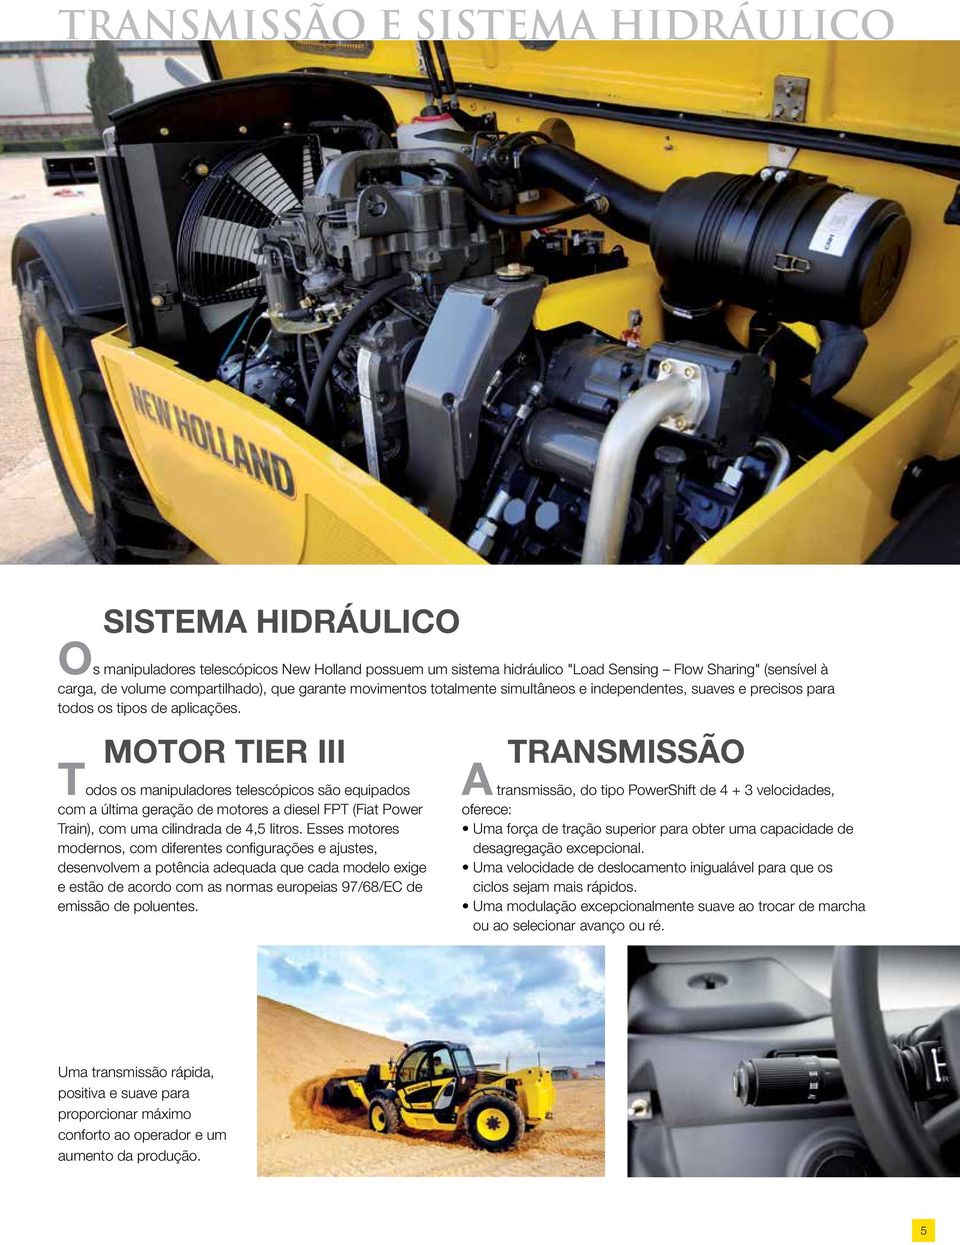 MOTOR TIER III Todos os manipuladores telescópicos são equipados com a última geração de motores a diesel FPT (Fiat Power Train), com uma cilindrada de 4,5 litros.